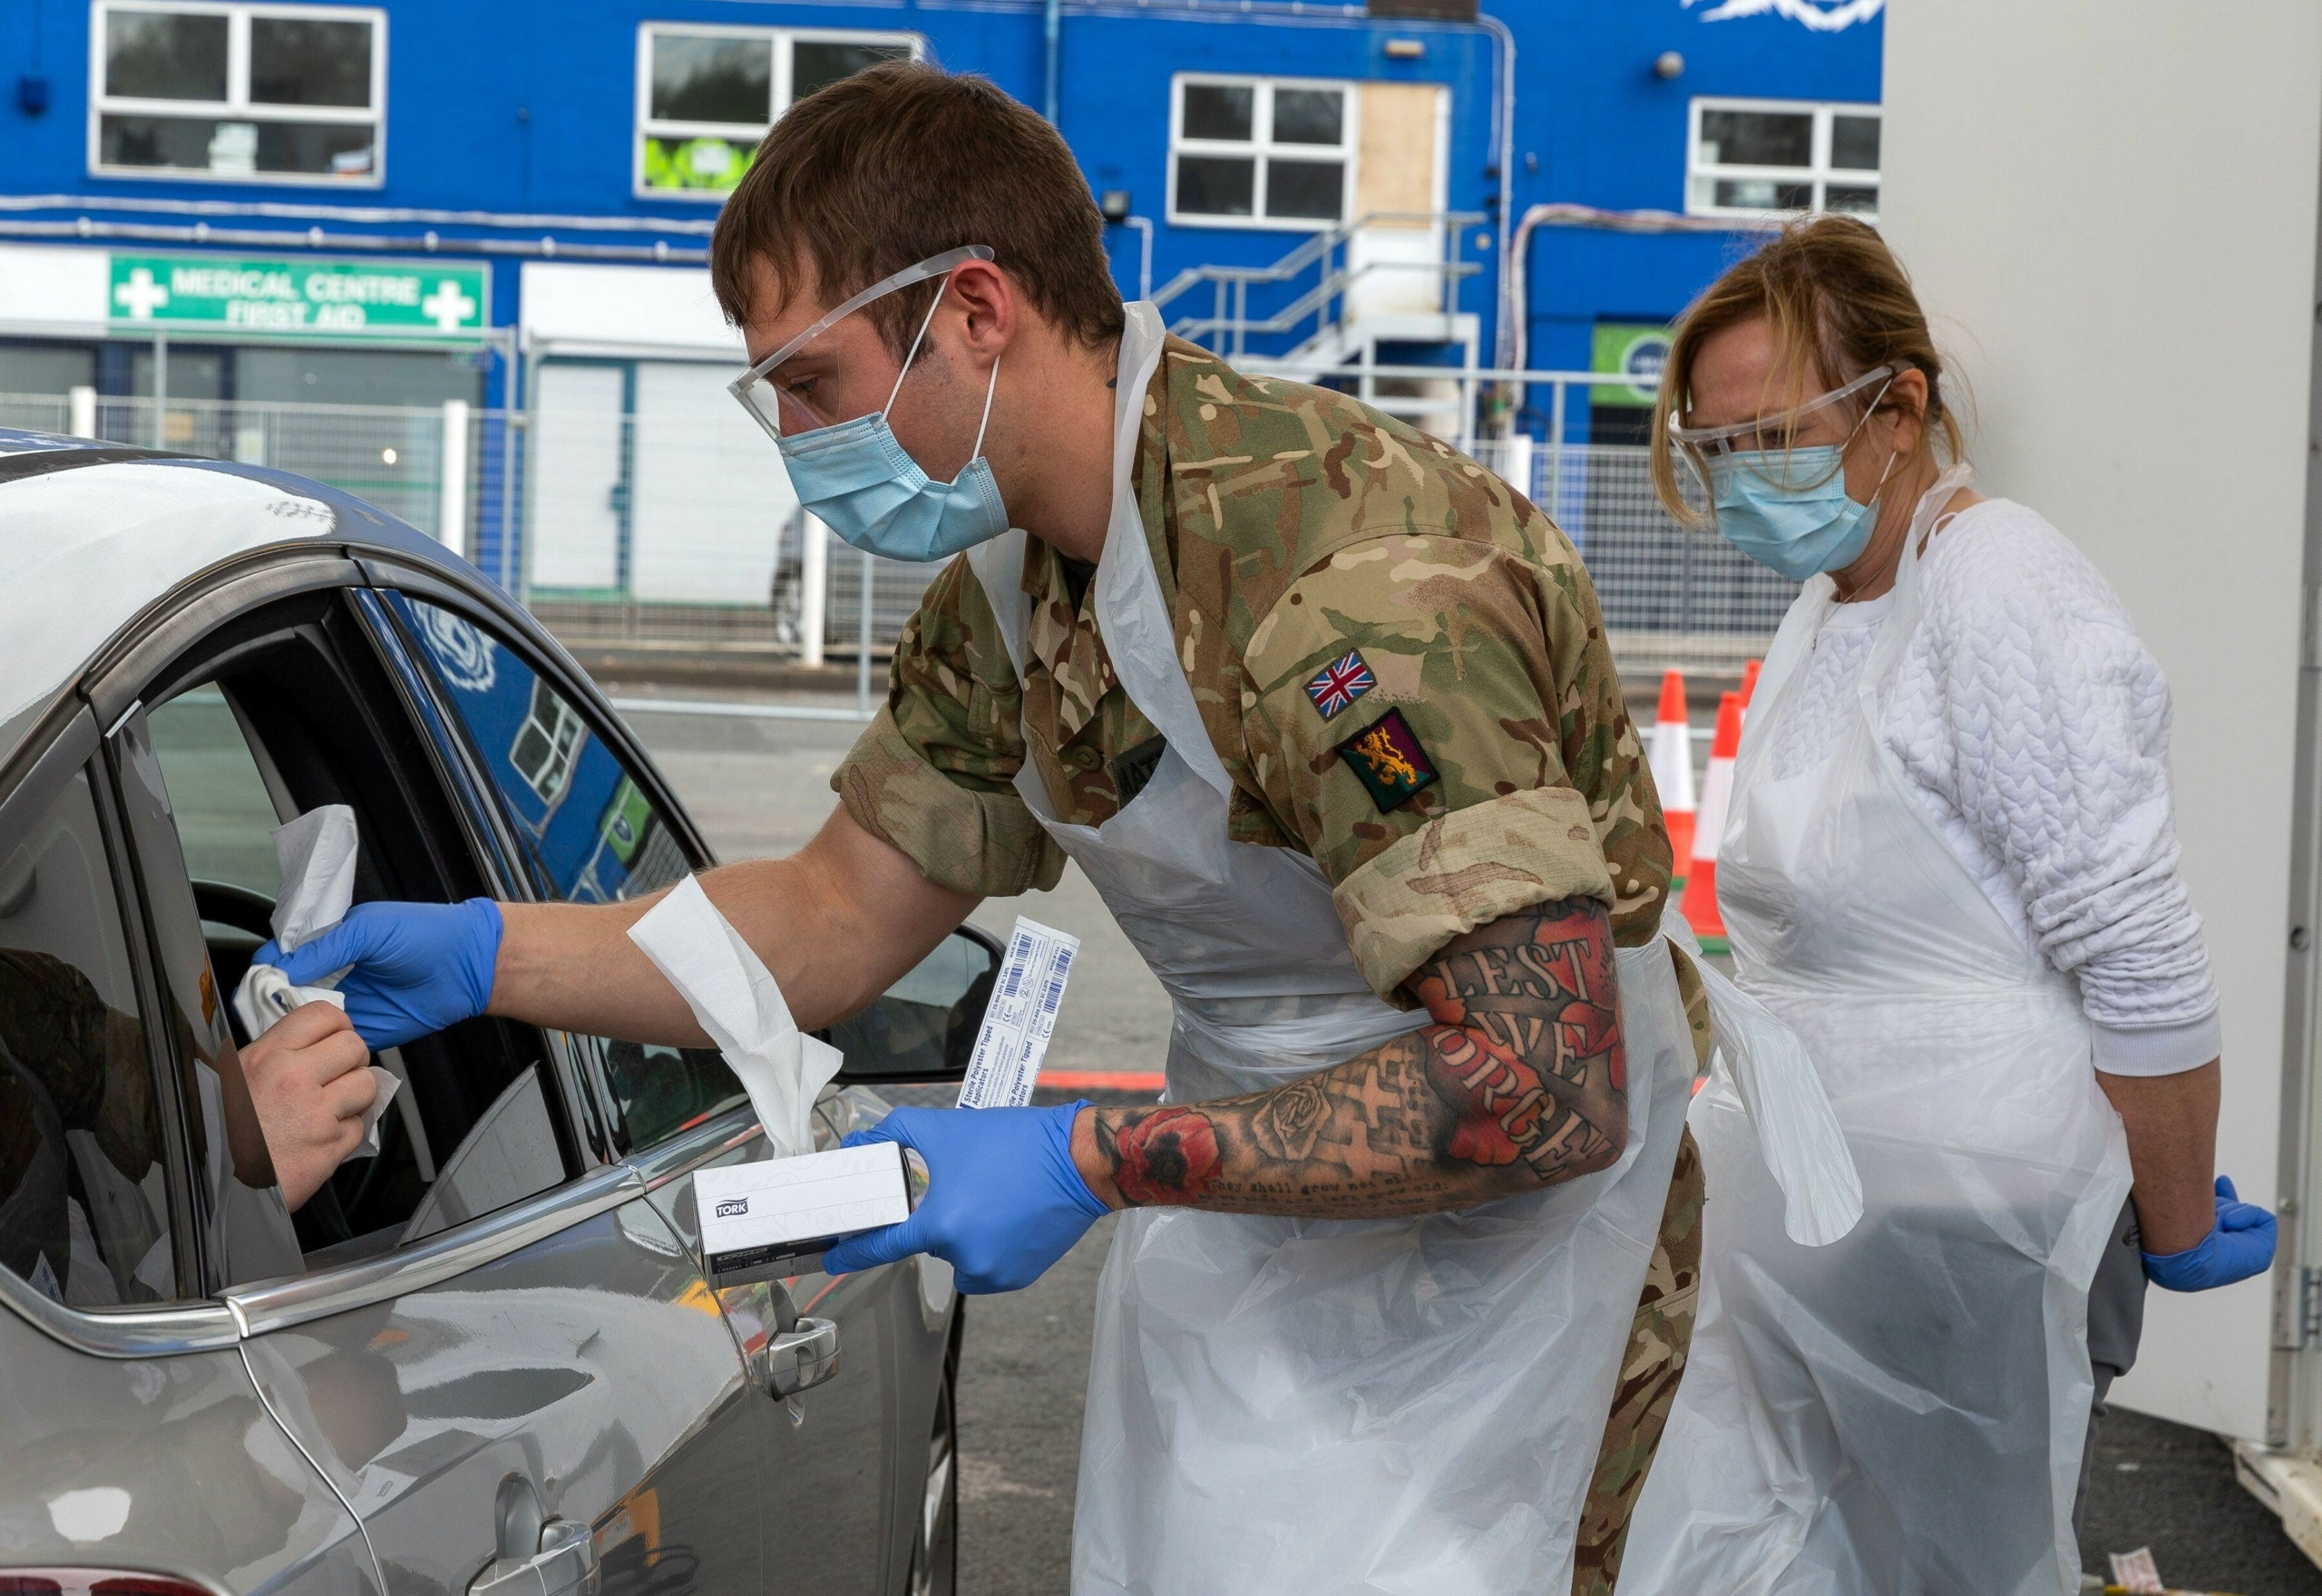 بريطانيا تستعين بالجيش لمساعدة المستشفيات وسط ارتفاع إصابات كورونا 